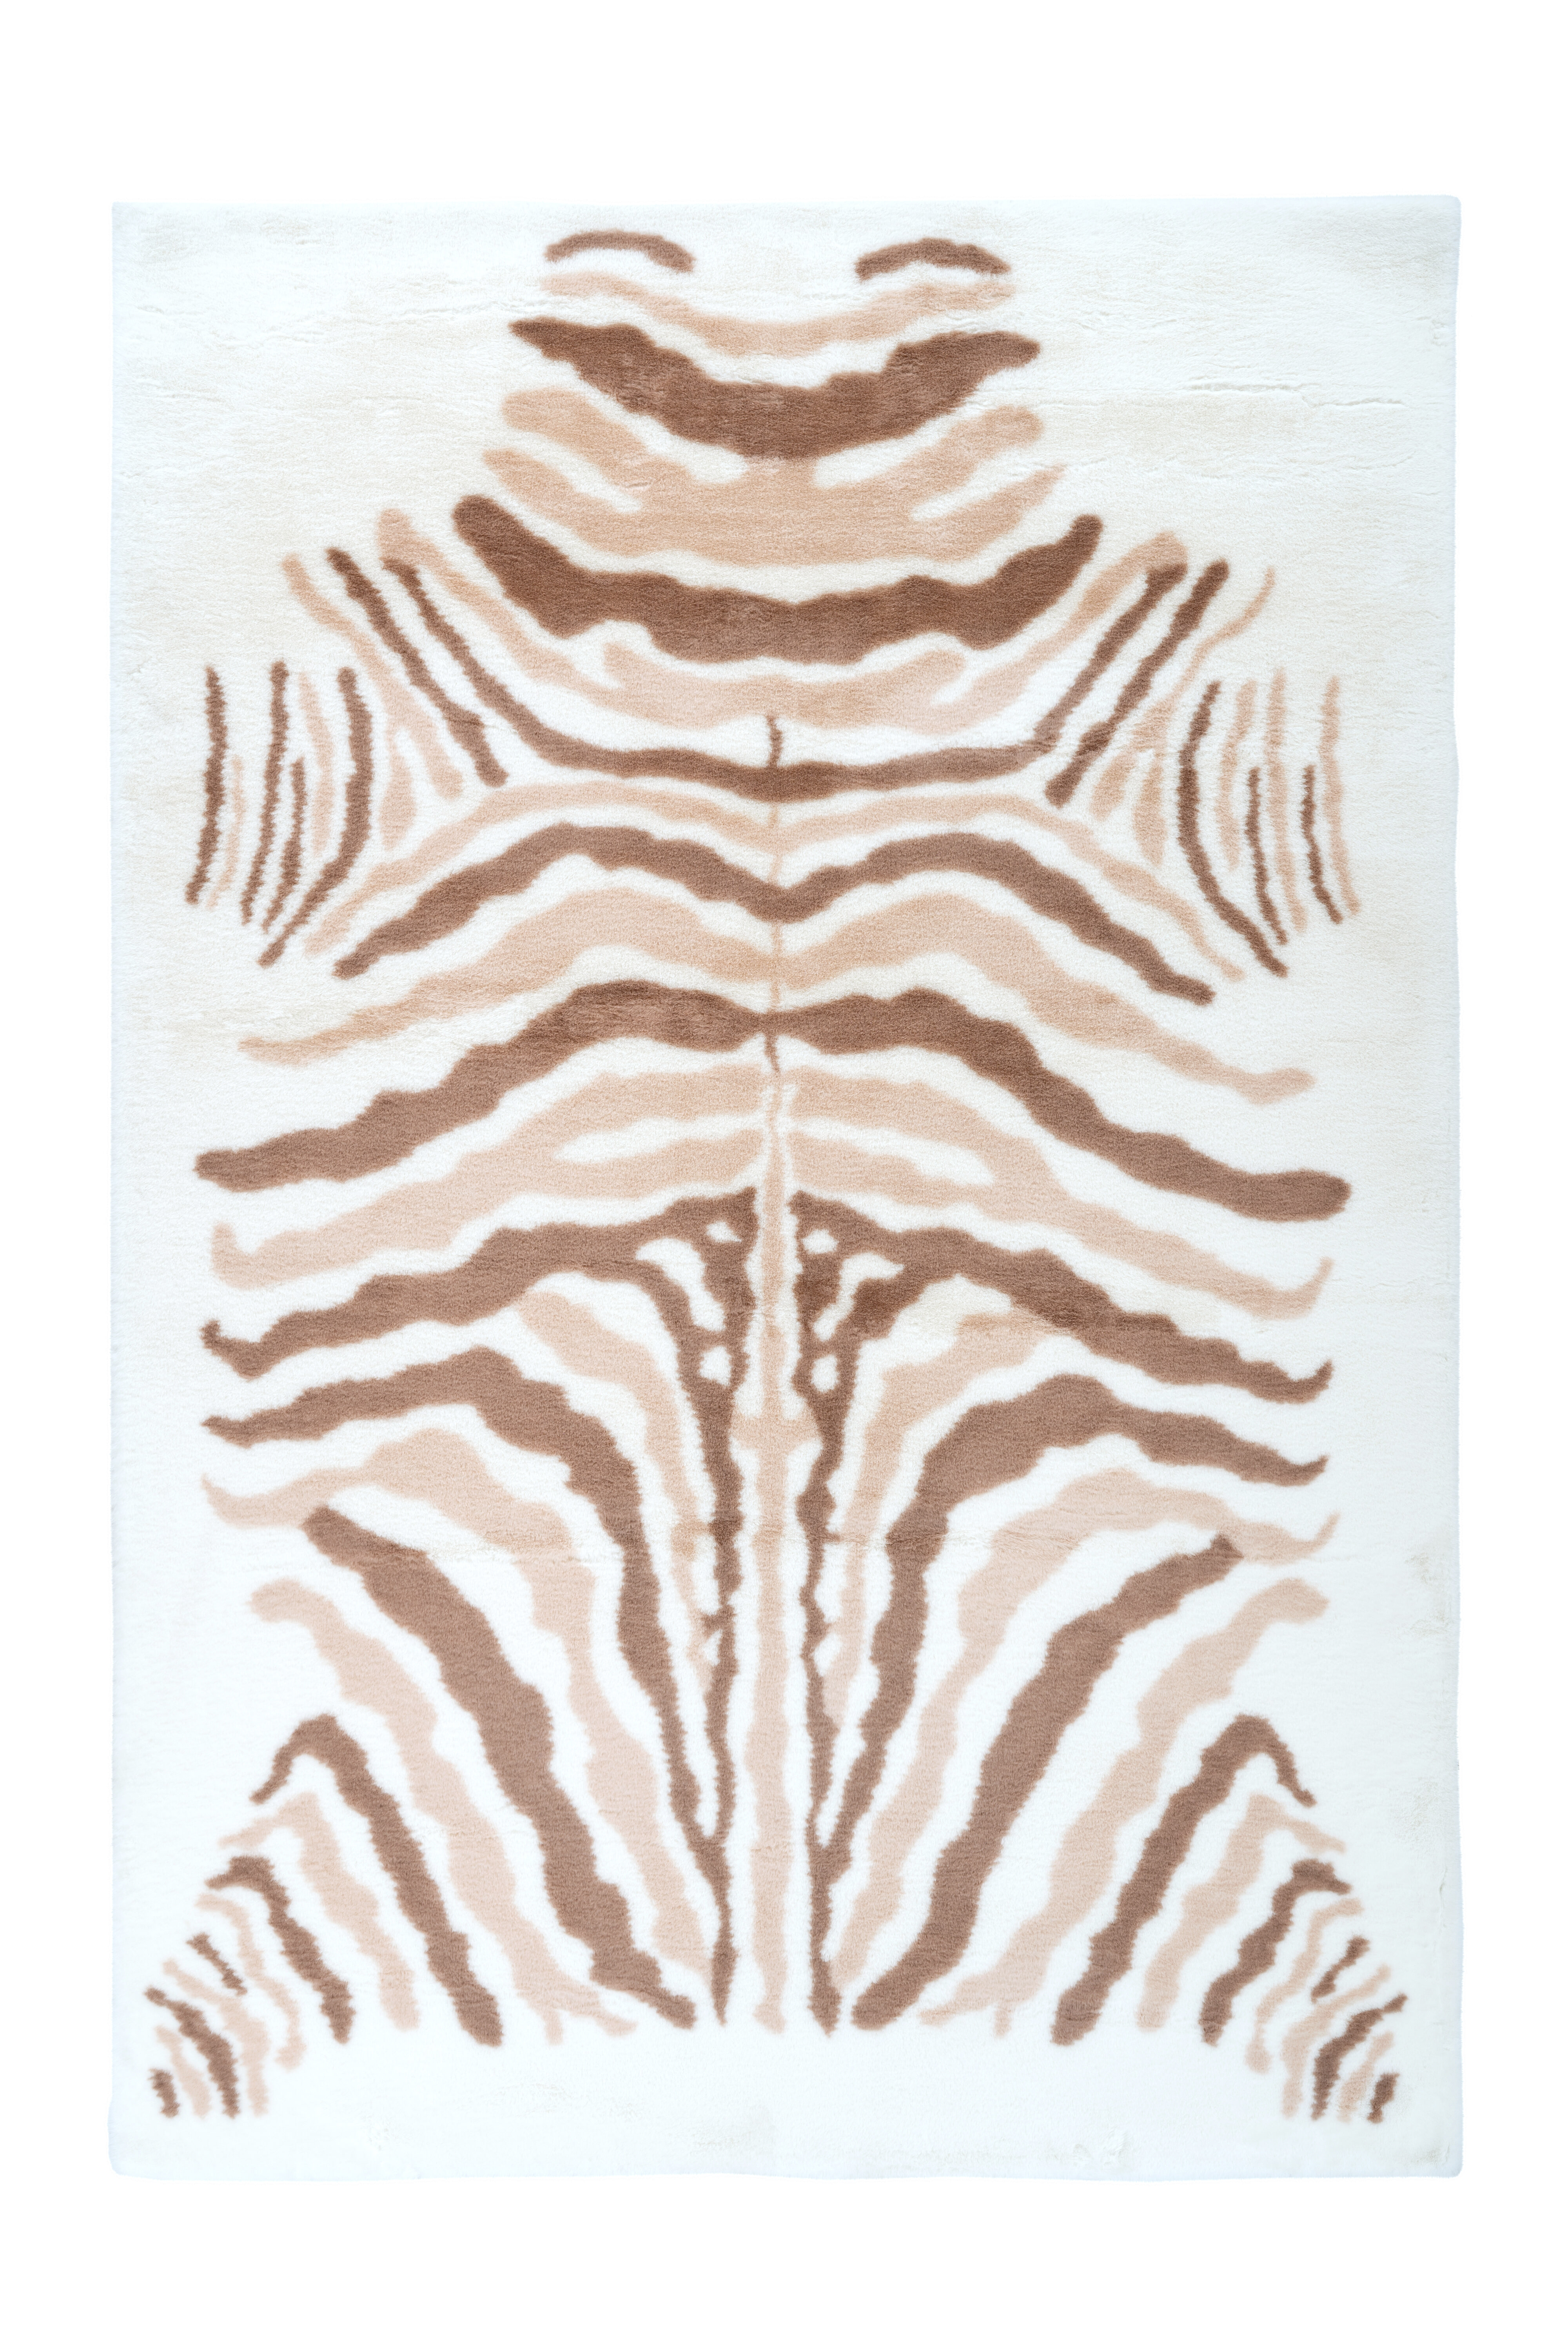 Kayoom Vloerkleed 'Rabbit Animal' kleur ivoor - bruin, 160 x 230cm